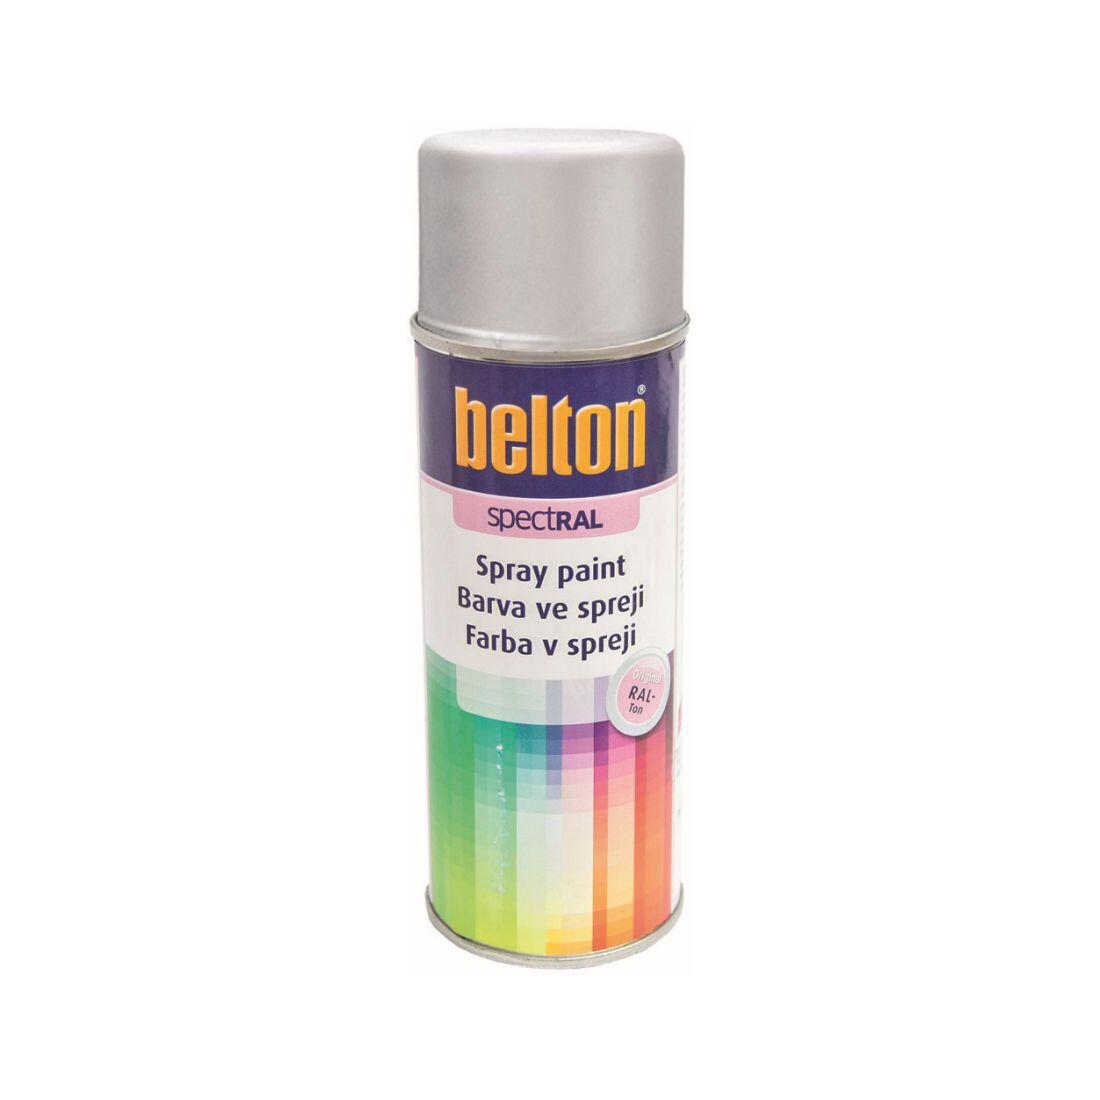 barva ve spreji BELTON RAL 9006, 400ml BÍ Al 0.31 Kg MAXMIX Sklad14 825383 7